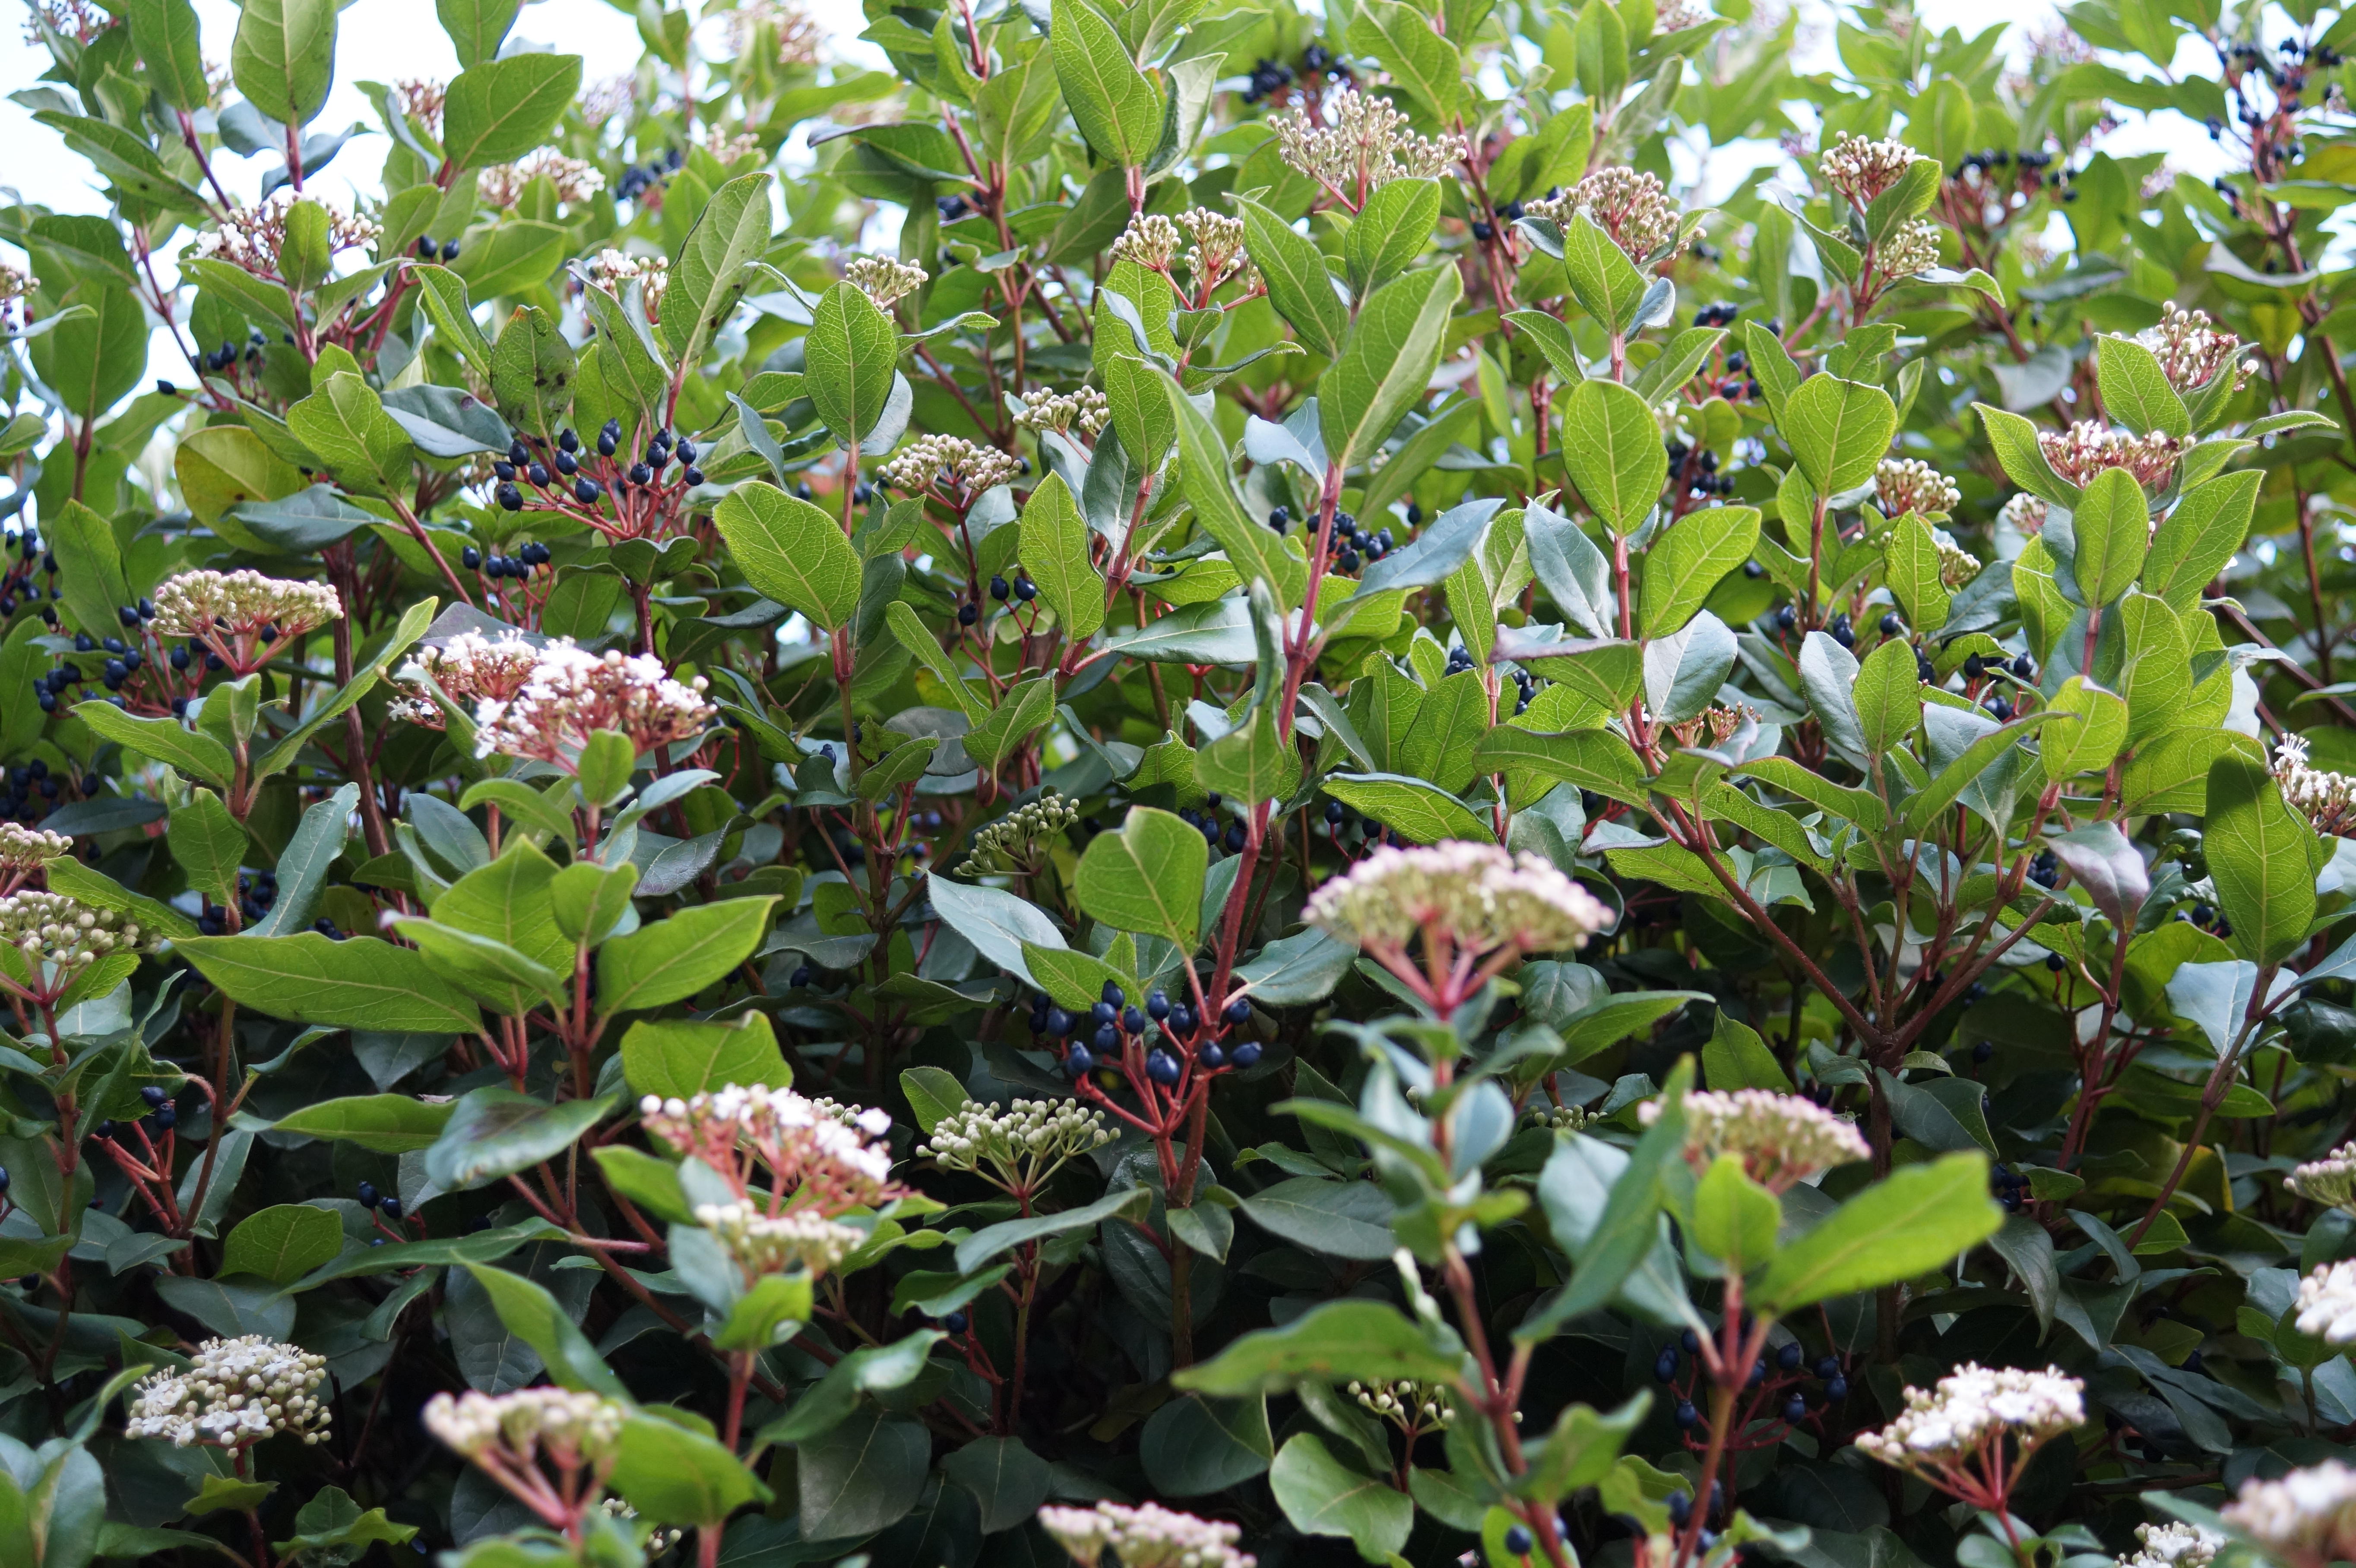 Viburnum tinus, a common shrub widespread across the UK